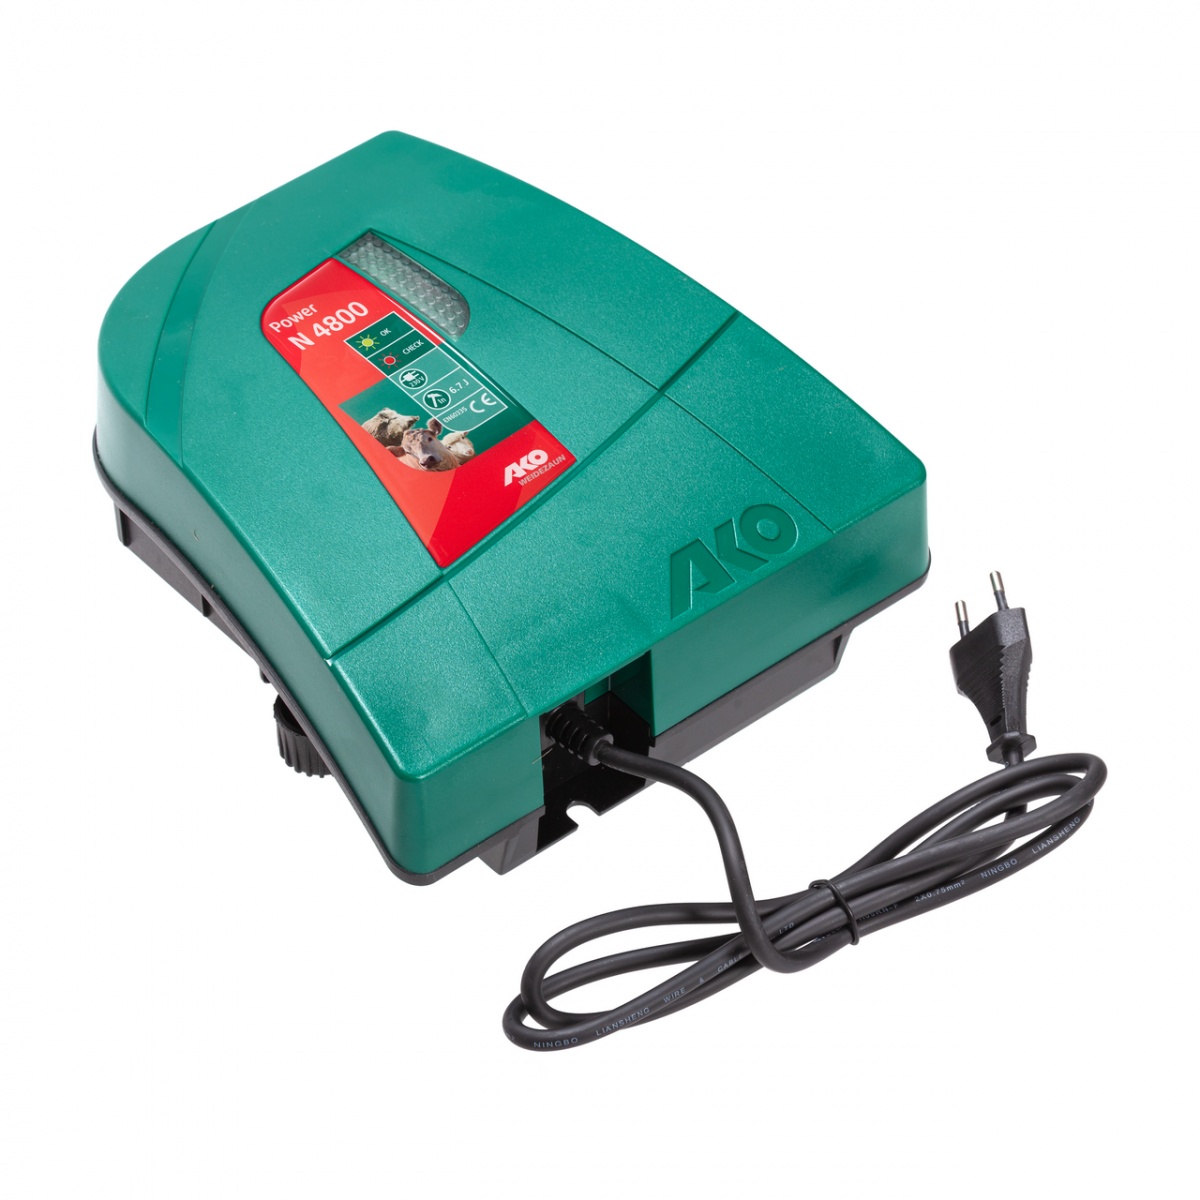 AKO Power N 4800 villanypásztor készülék, 230 V, 4,8 Joule